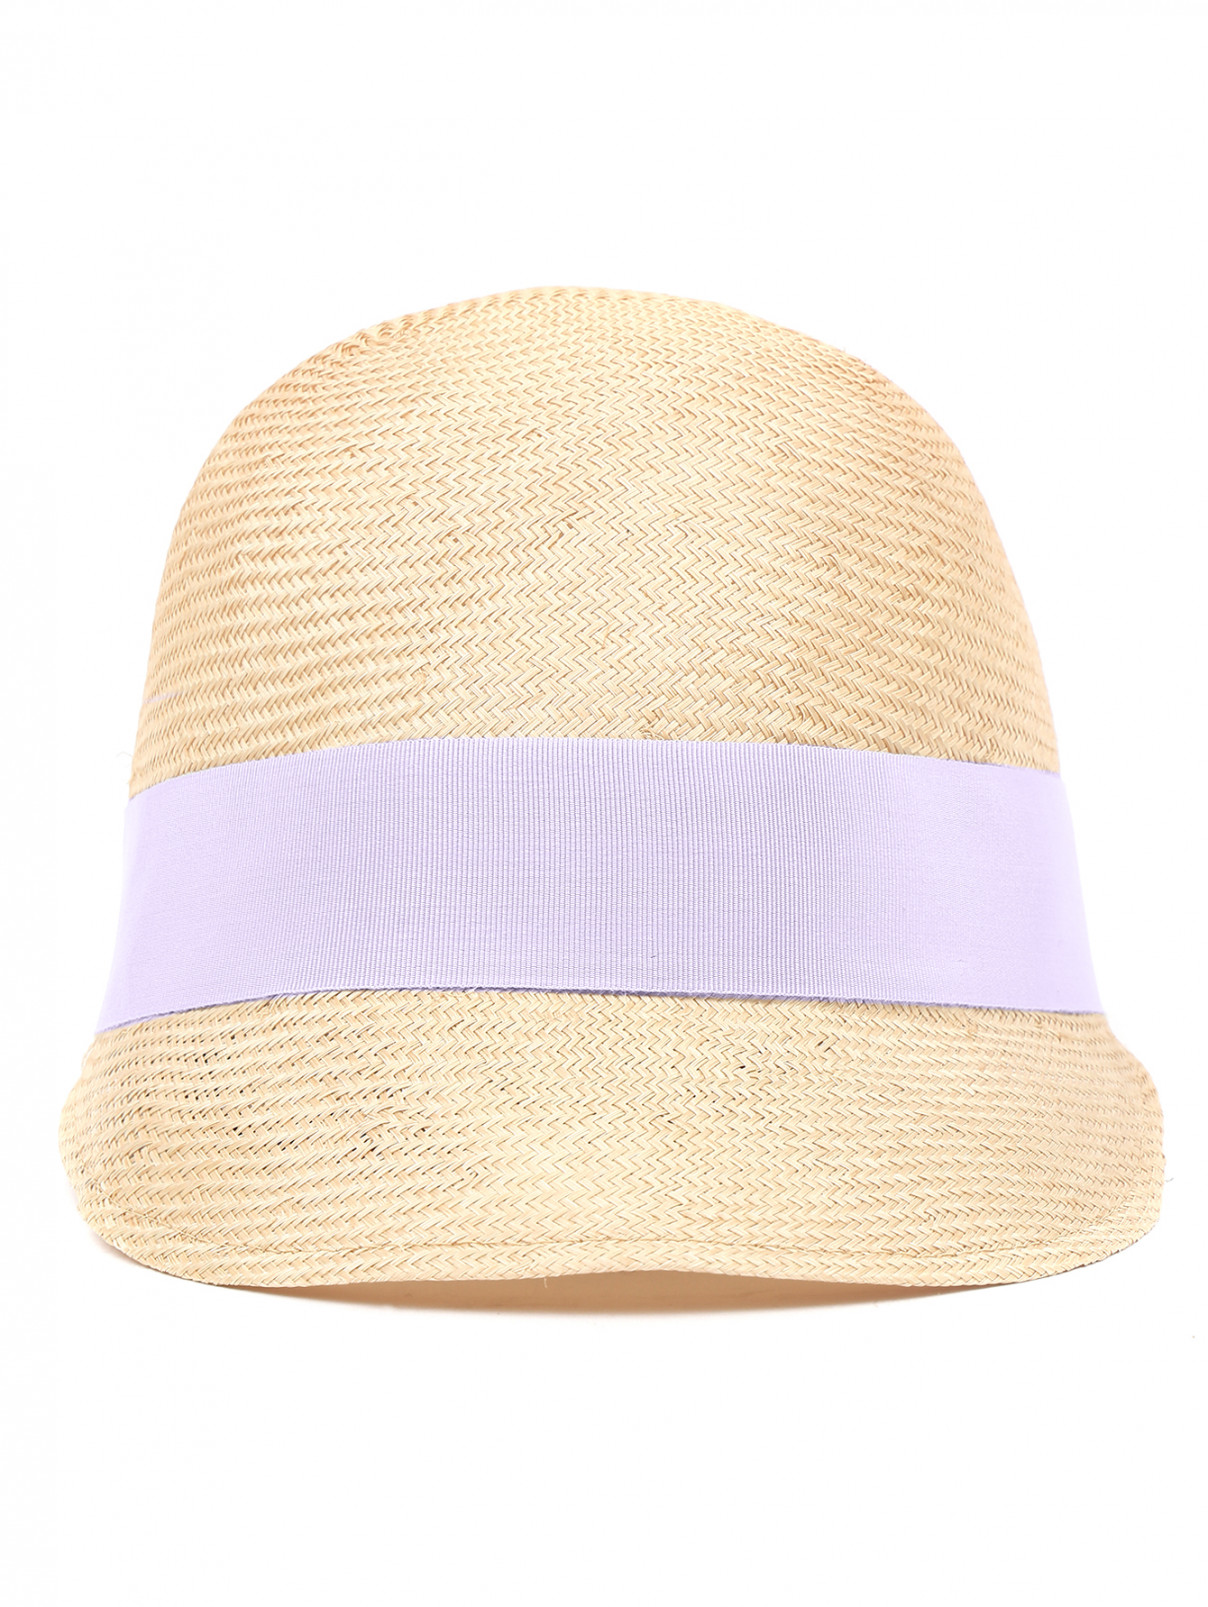 Шляпа из соломы с контрастной отделкой Federica Moretti  –  Обтравка1  – Цвет:  Бежевый